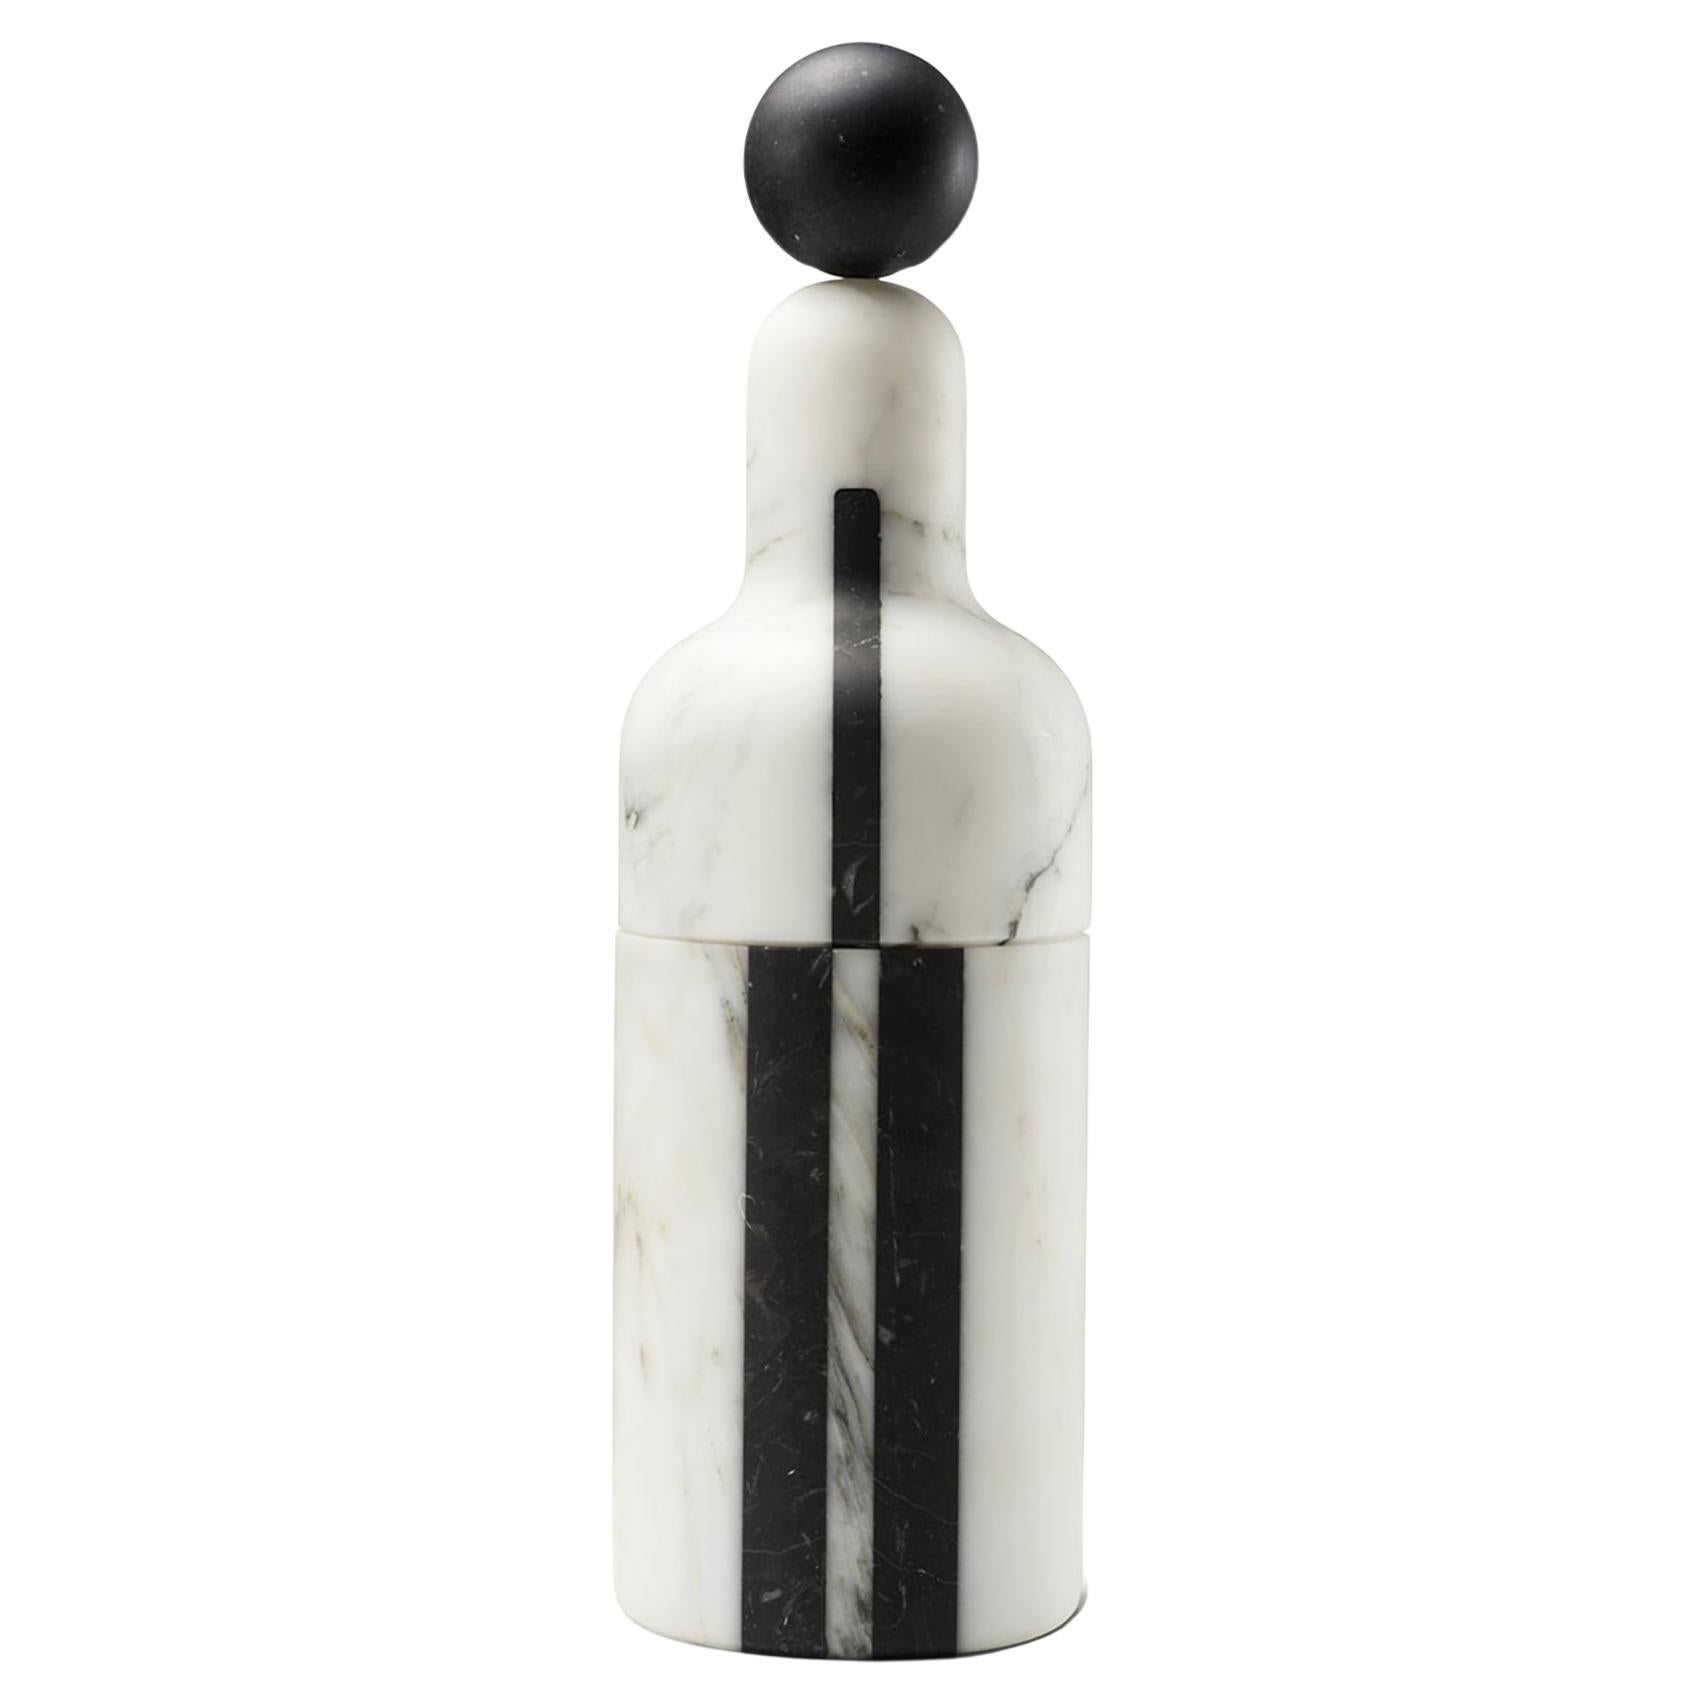 Kühler-C-Flasche von Pietro Russo